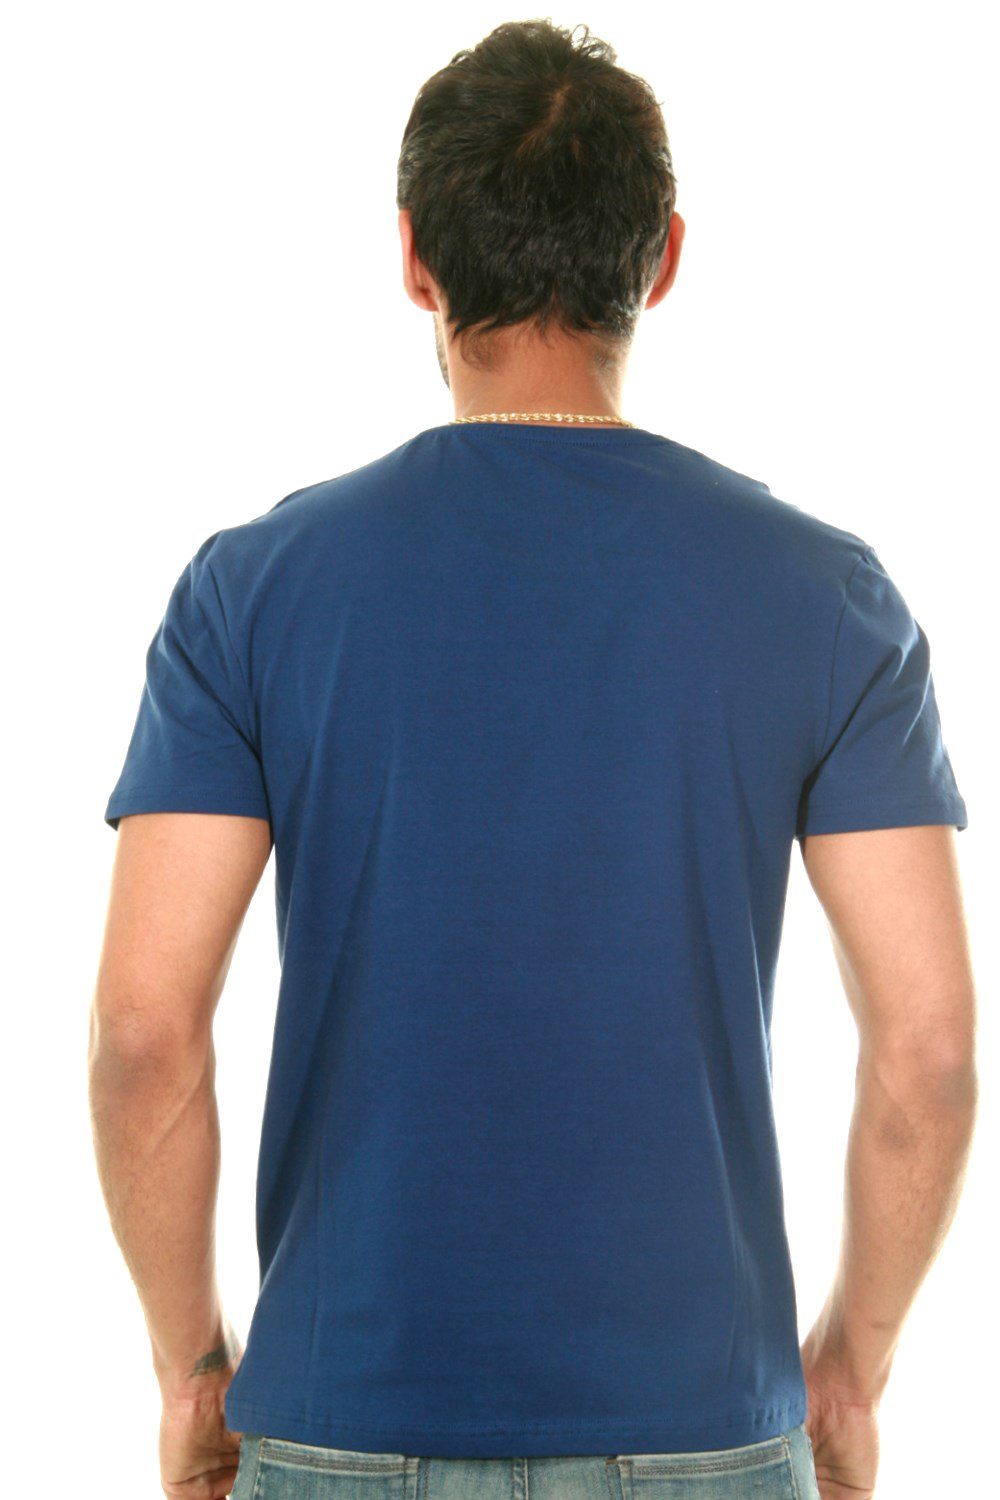 FIOCEO Rundhalsshirt blau